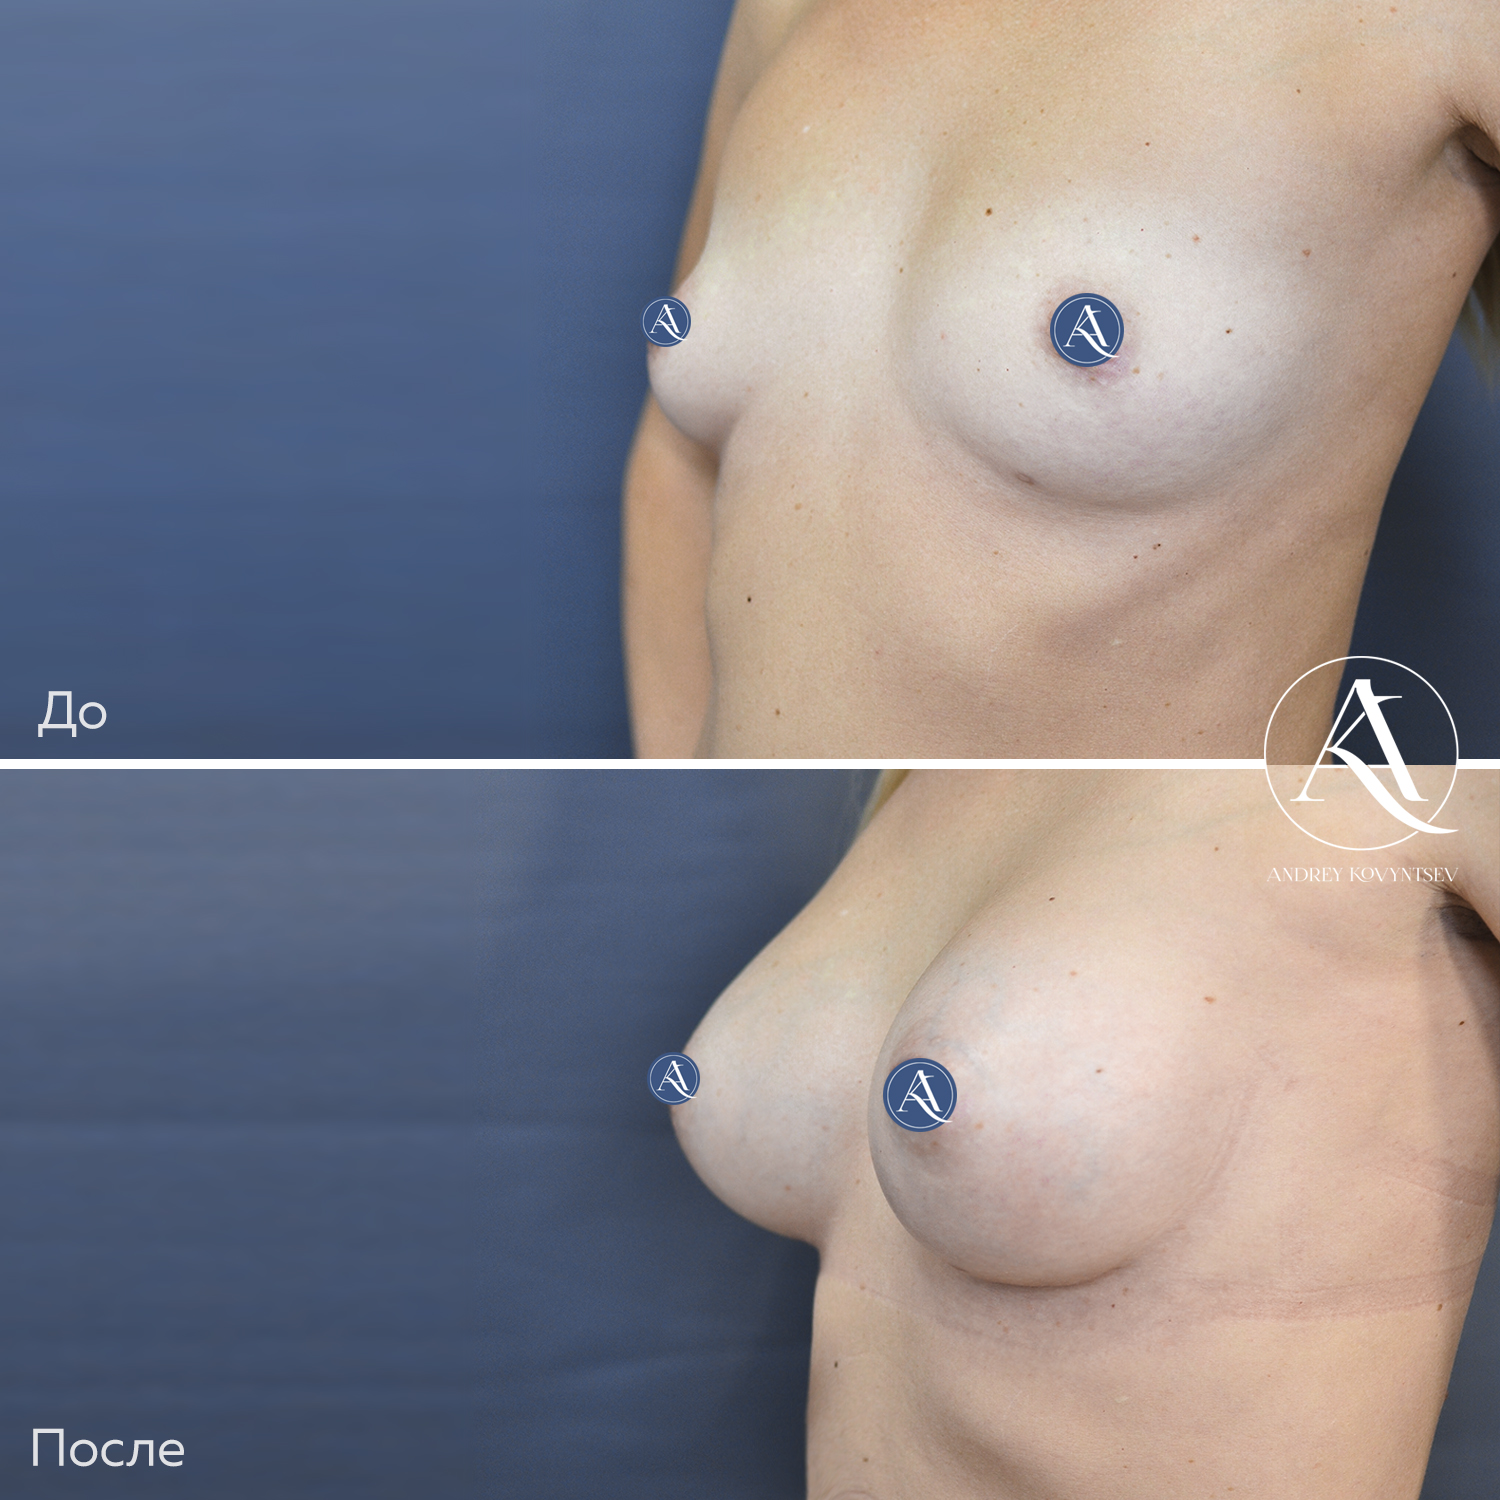 асимметрия груди у женщин форум фото 104